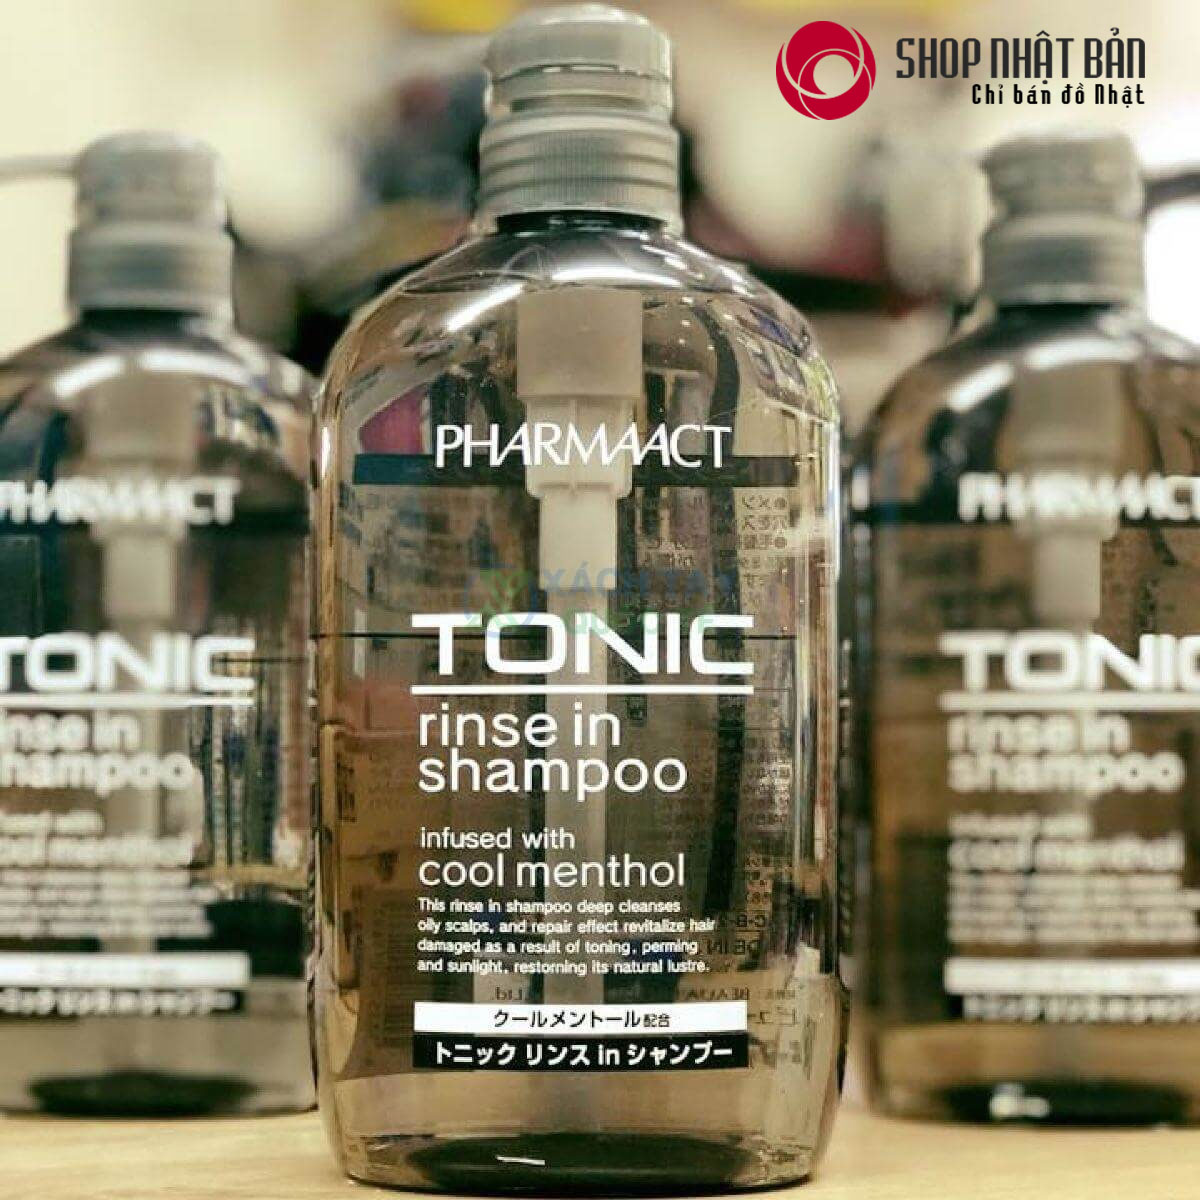 Dầu gội xả cho nam Pharmaact Tonic Cool Menthol vô cùng tiện lợi bởi chức năng 2 trong 1 vừa gội sạch vừa xả thơm mát, dưỡng tóc bóng khỏe tự nhiên.